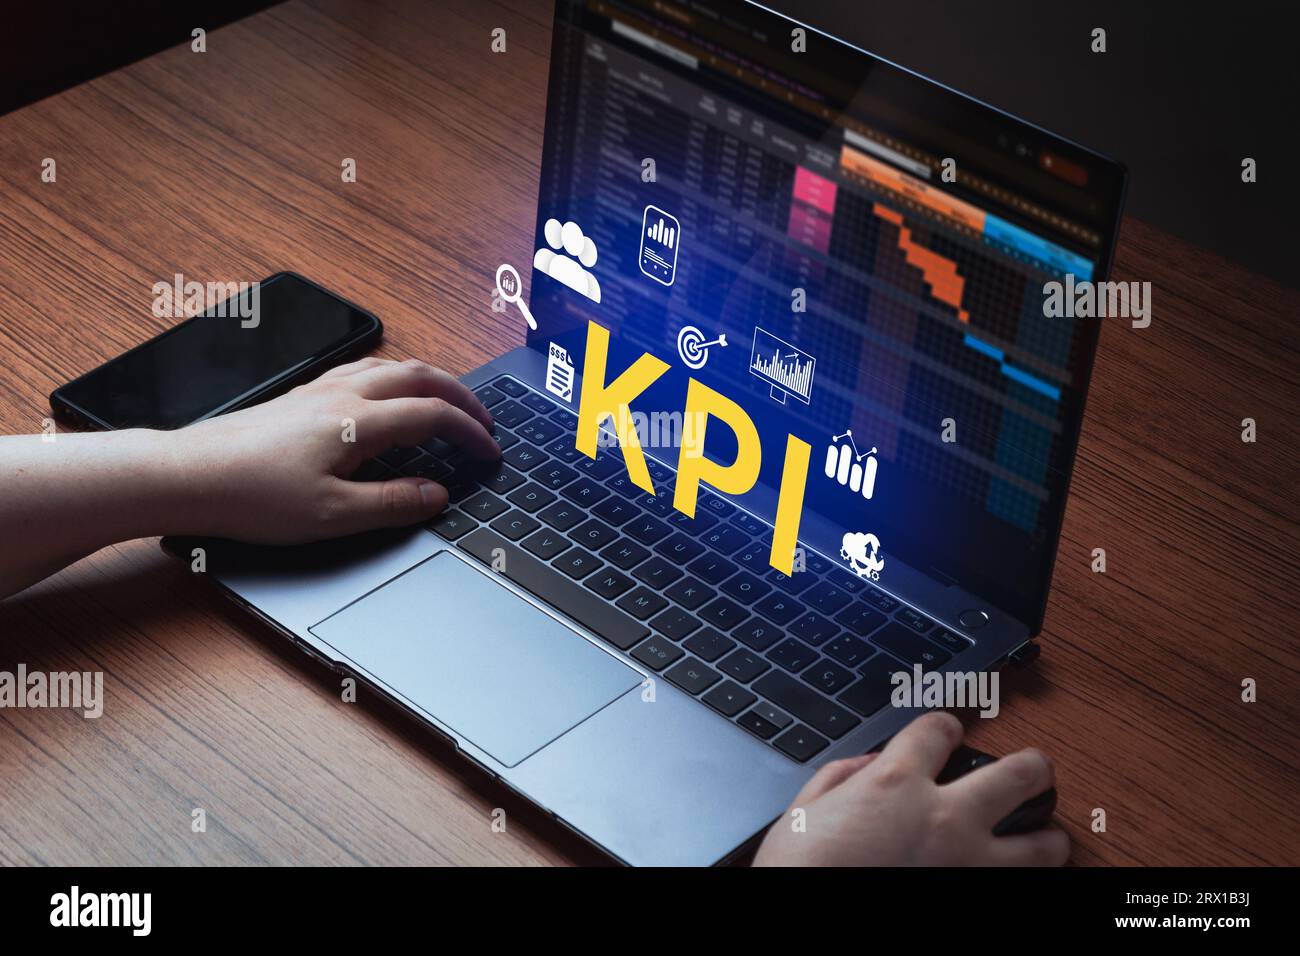 La femme utilise un ordinateur portable avec interface holographique KPI à l'écran. Indicateur clé de performance concept de technologie d'entreprise. Banque D'Images